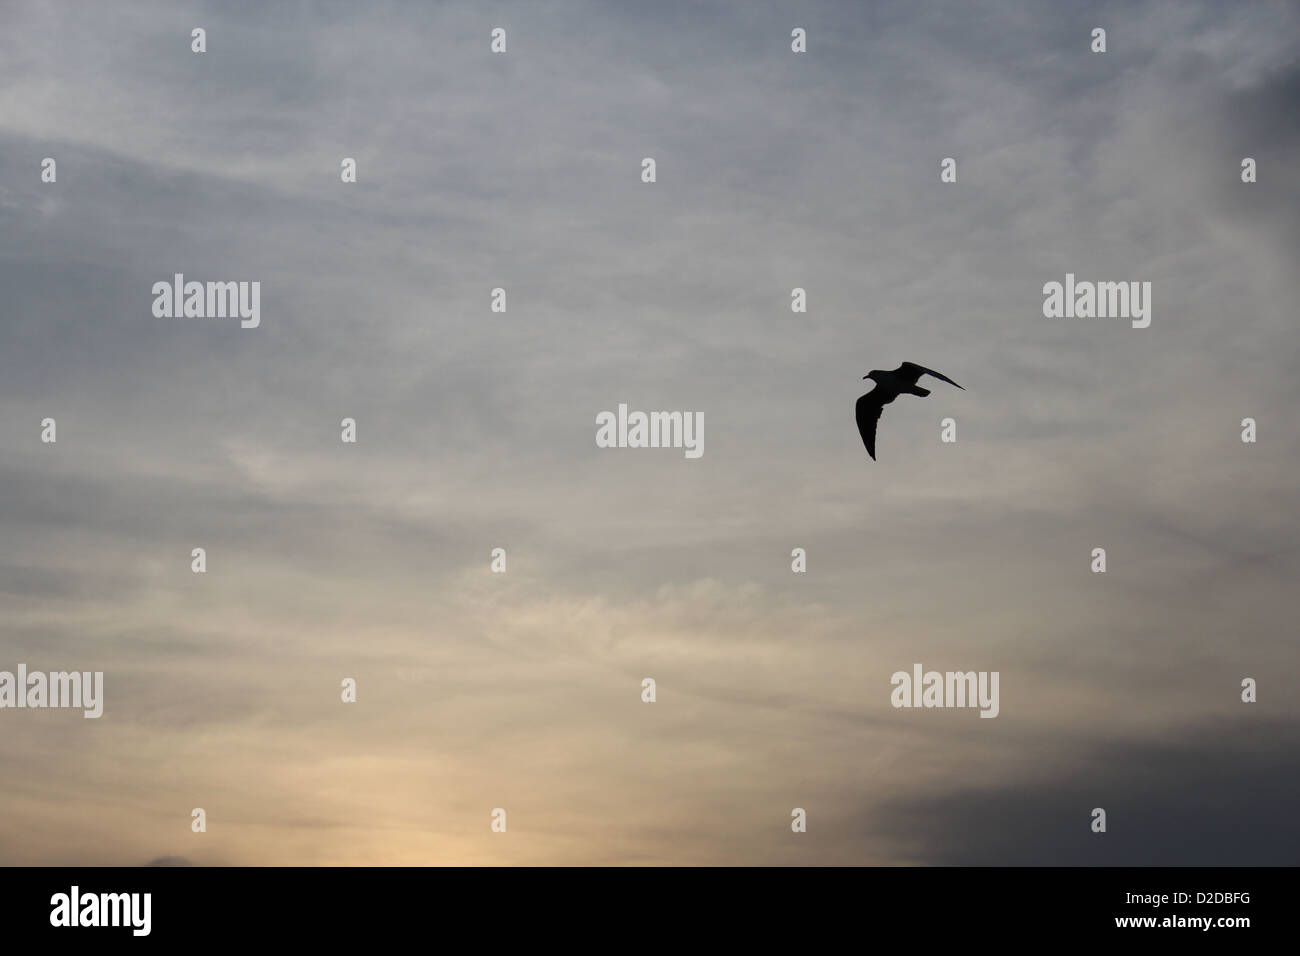 Eine schön knackig Silhouette eines Vogels unter den die texturierte Skyline von Afrika. Stockfoto